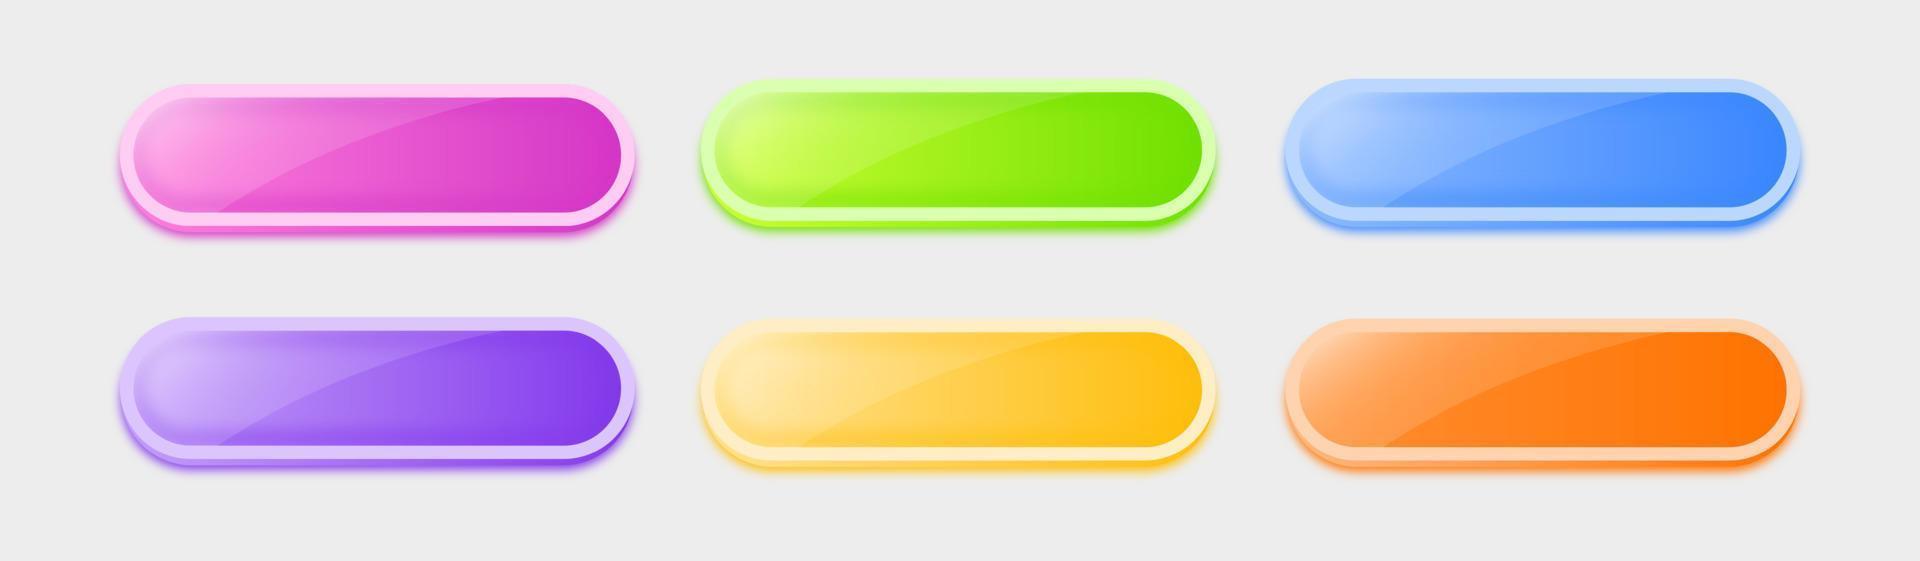 conjunto de botones coloridos en forma de rectángulo. conjunto de botones de colores diferentes. ilustración vectorial vector